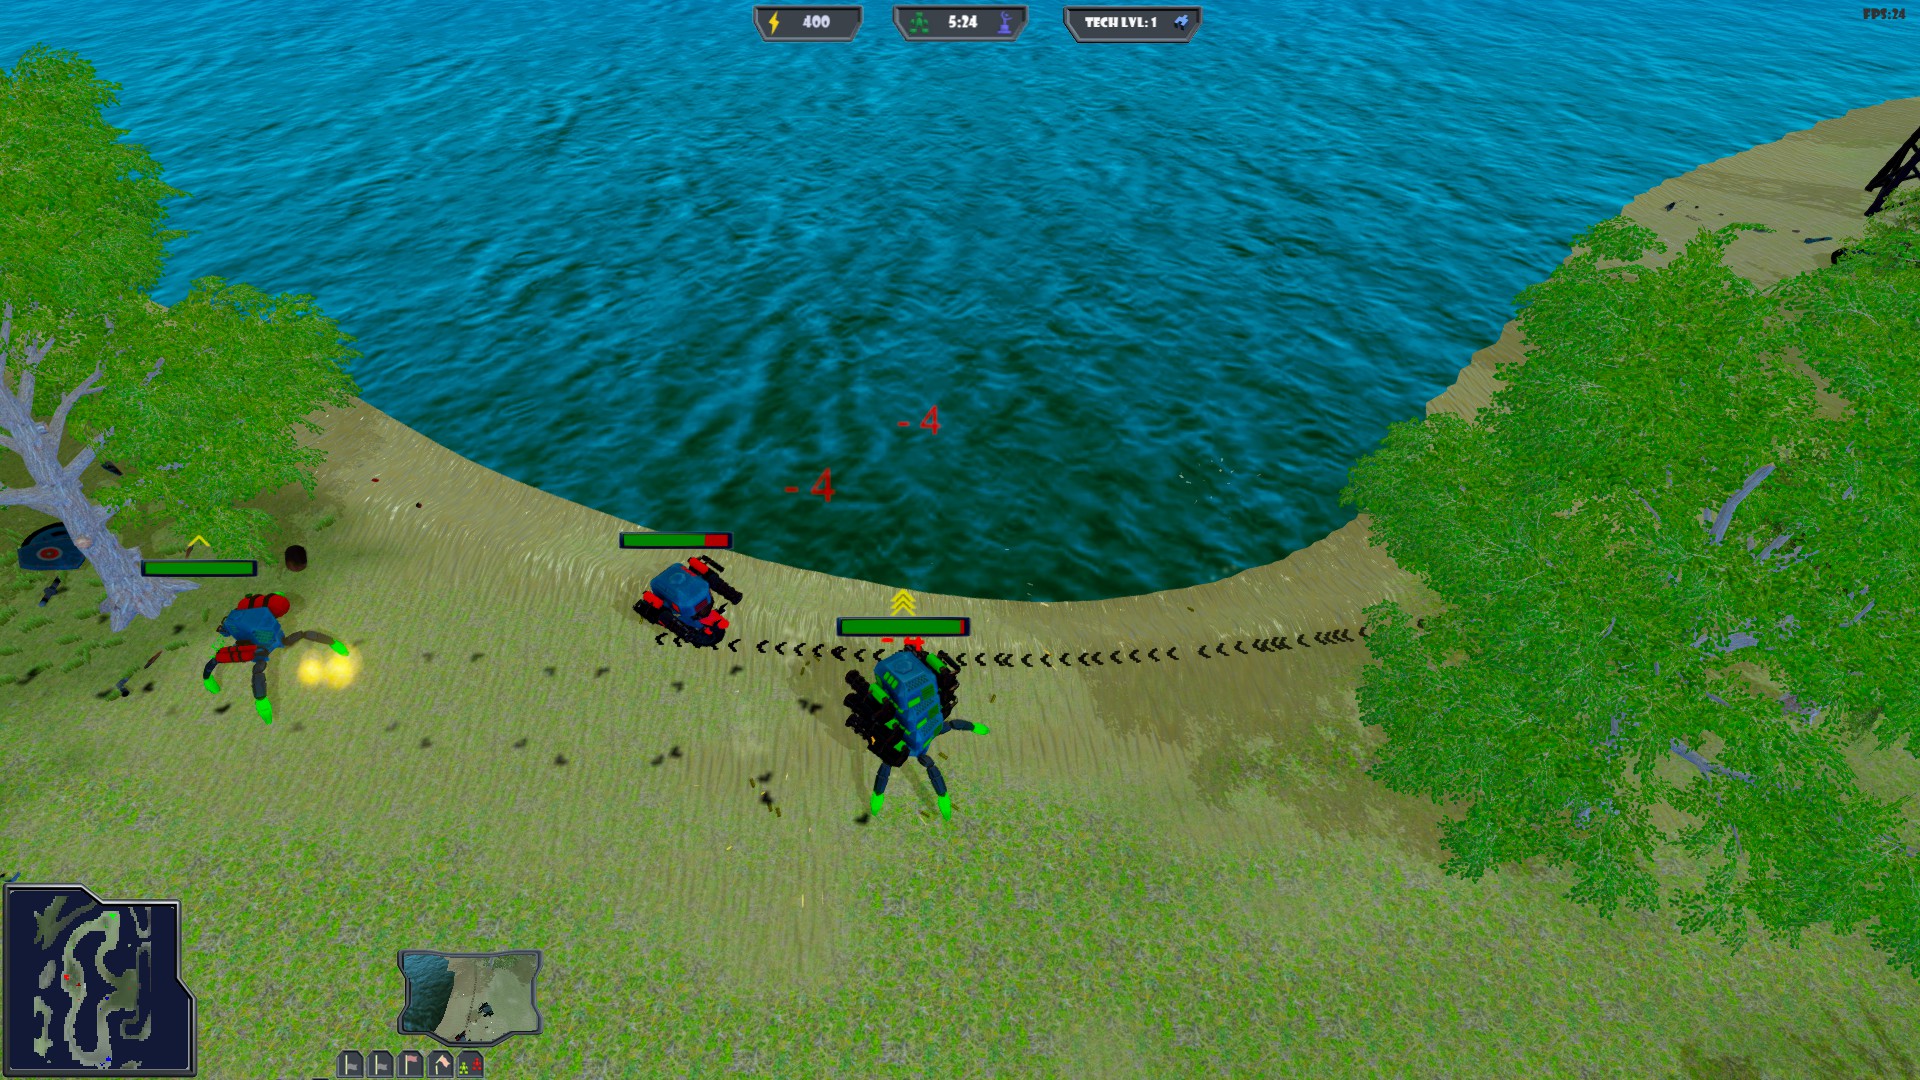 RoboWorlD tactics screenshot